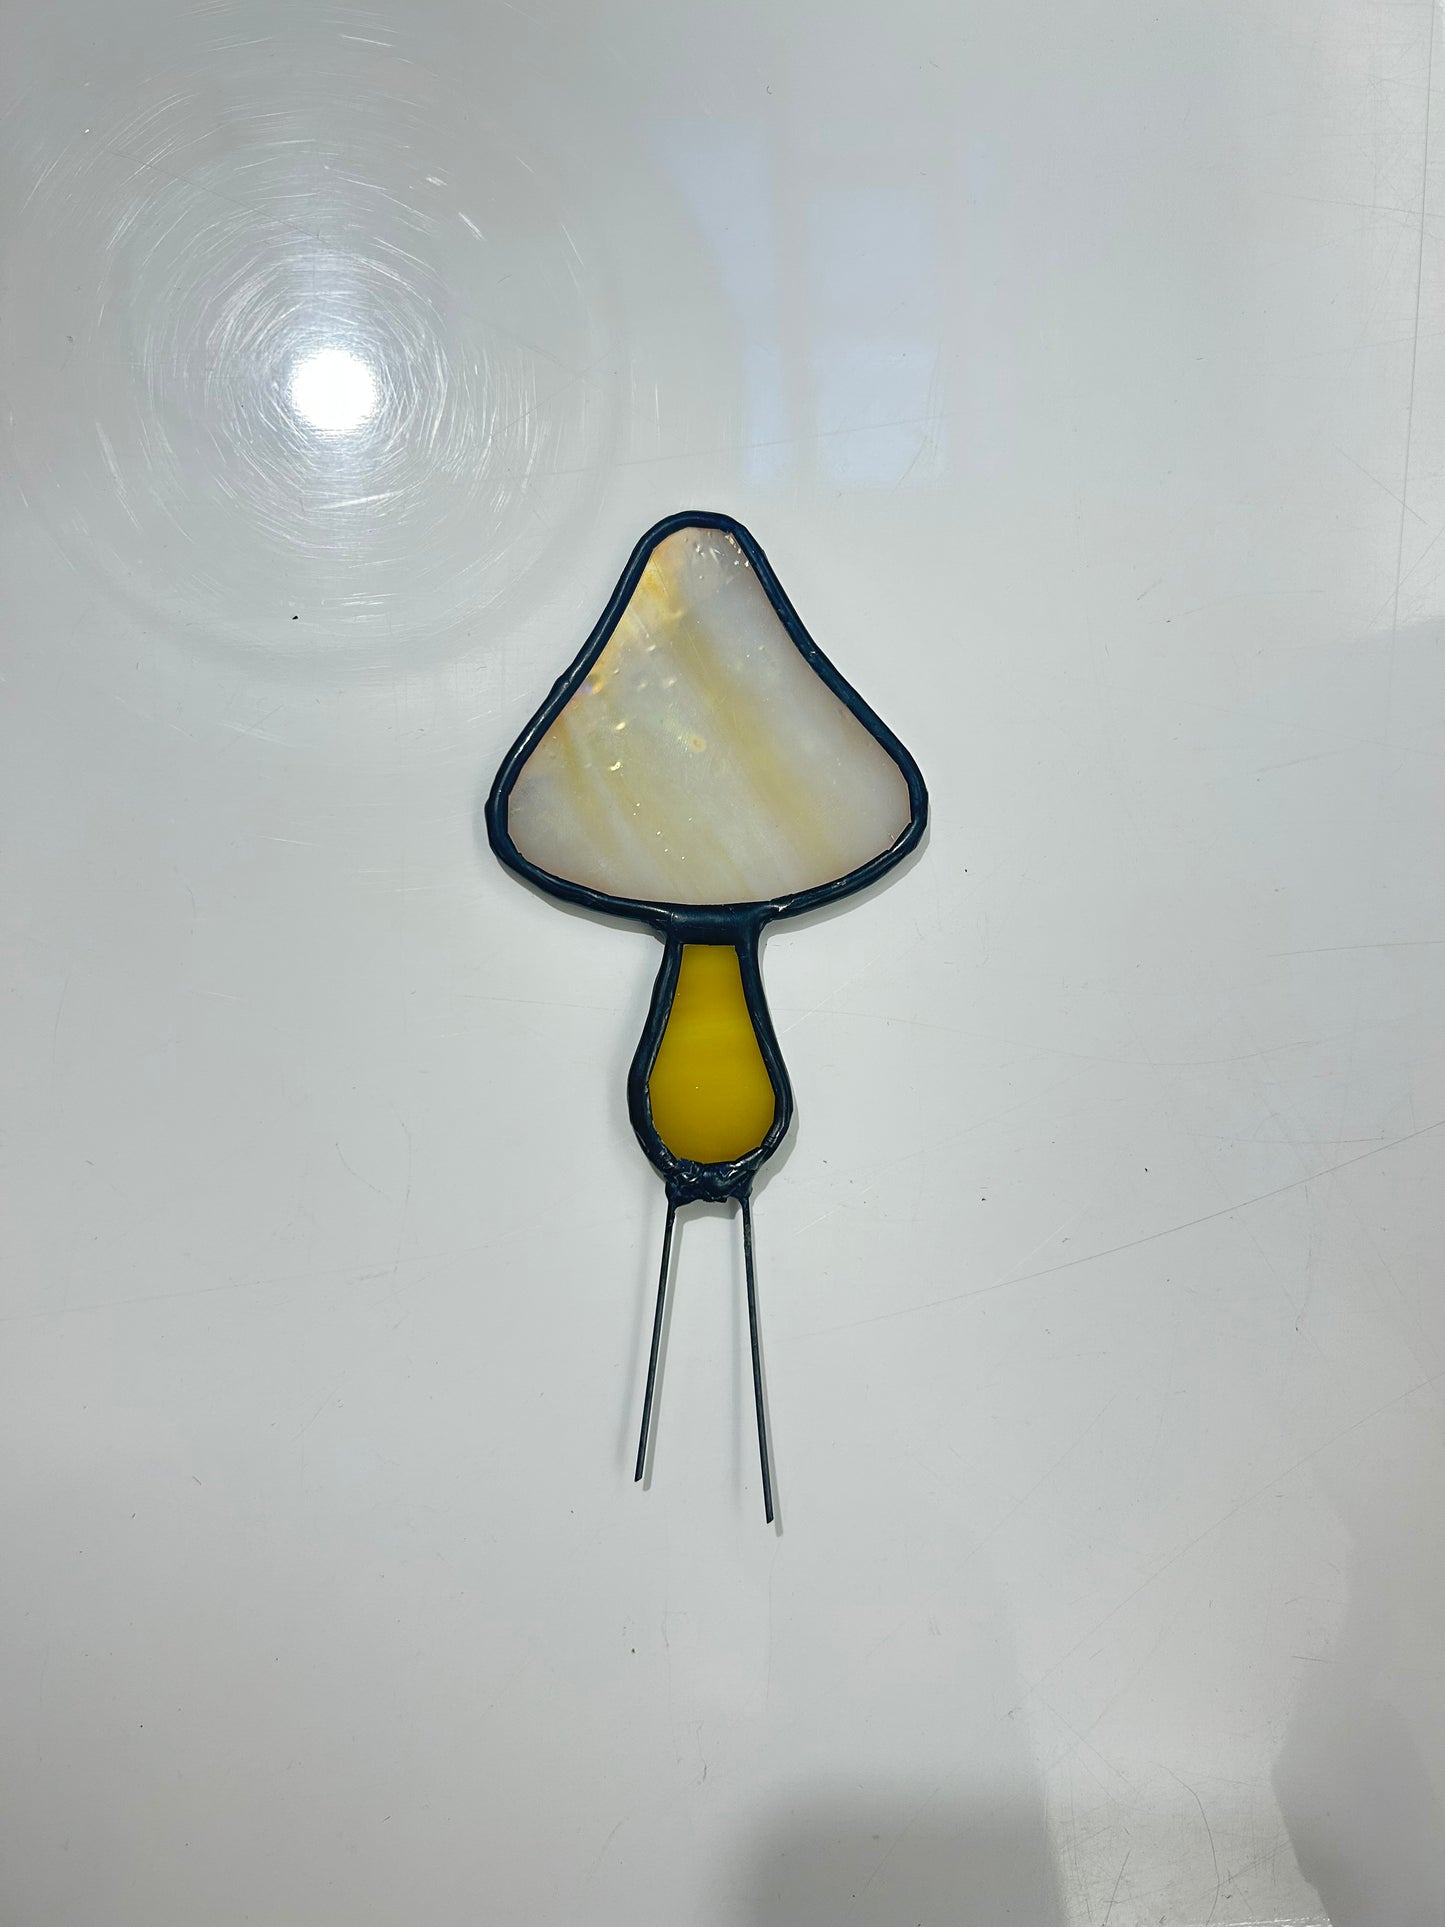 Iridescent yellow mushroom glass plant stake